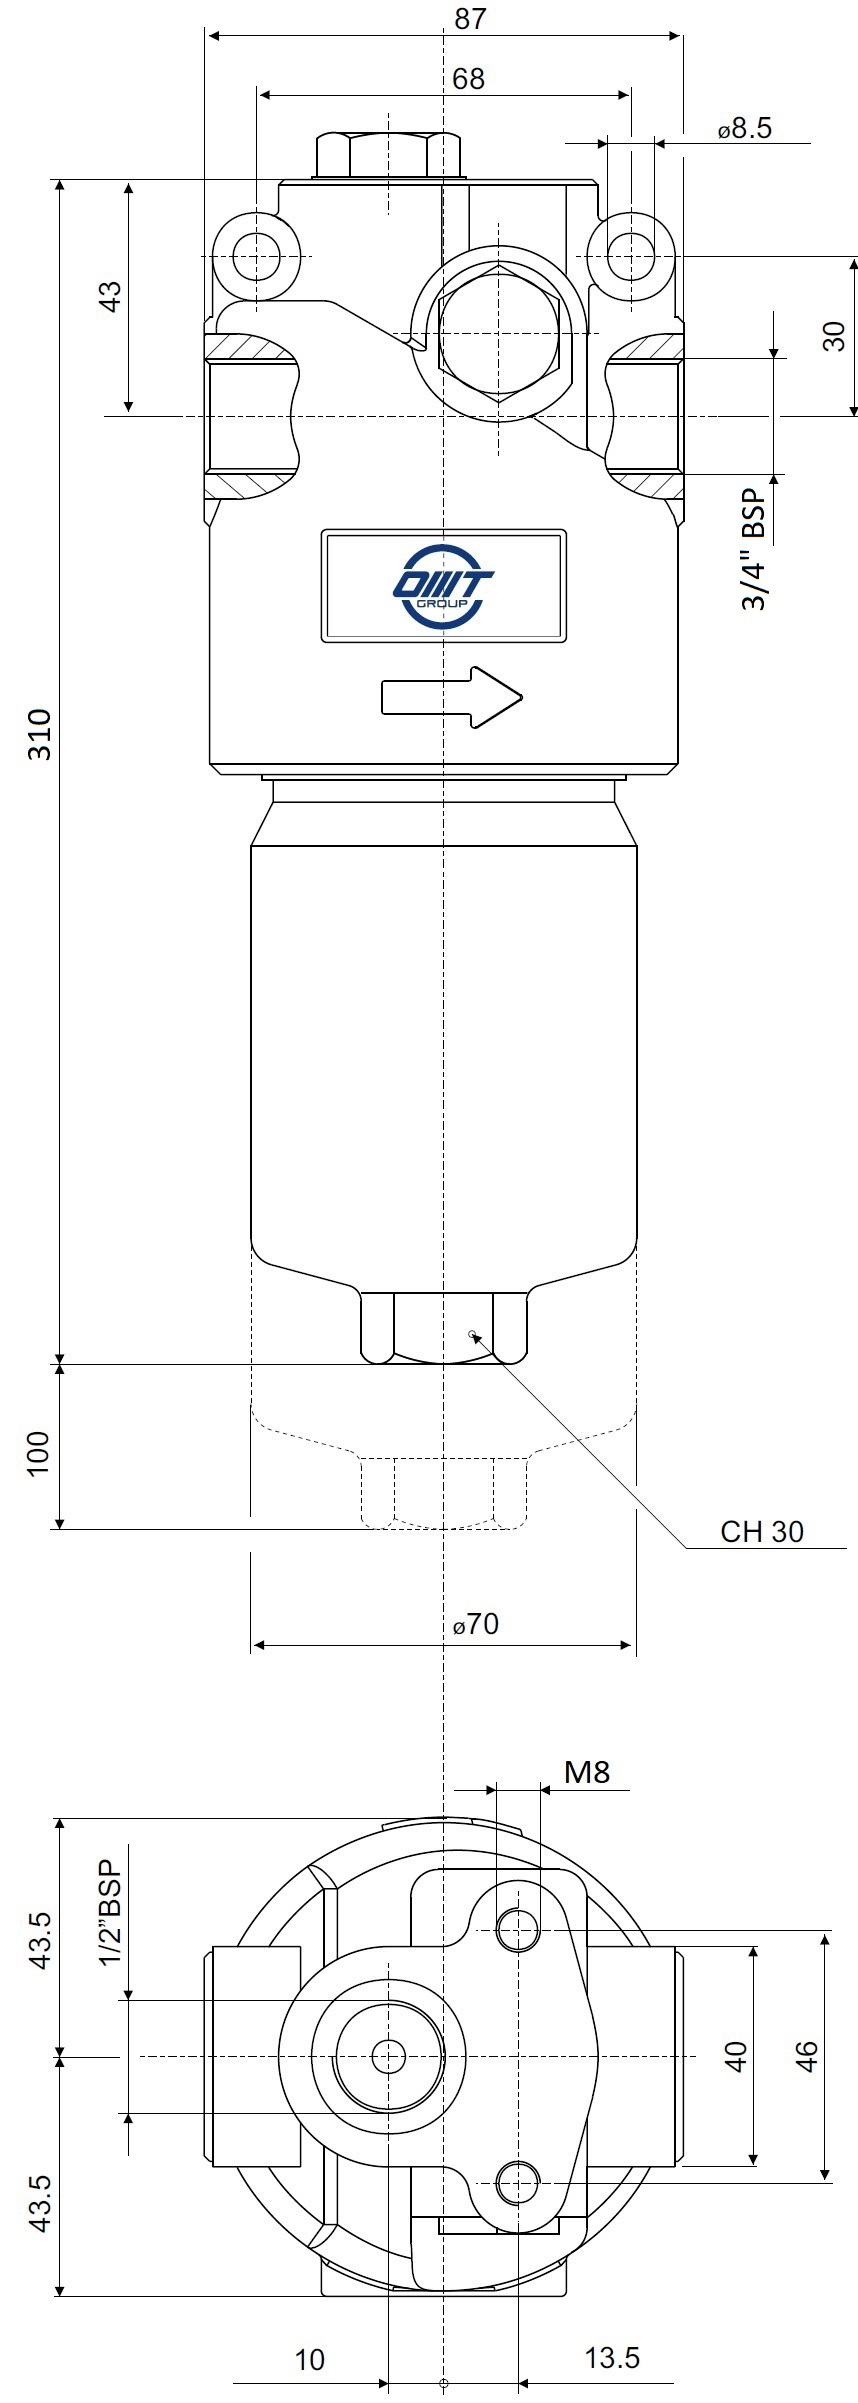 Габаритные и монтажные размеры напорного фильтра HMM283C10XNR1